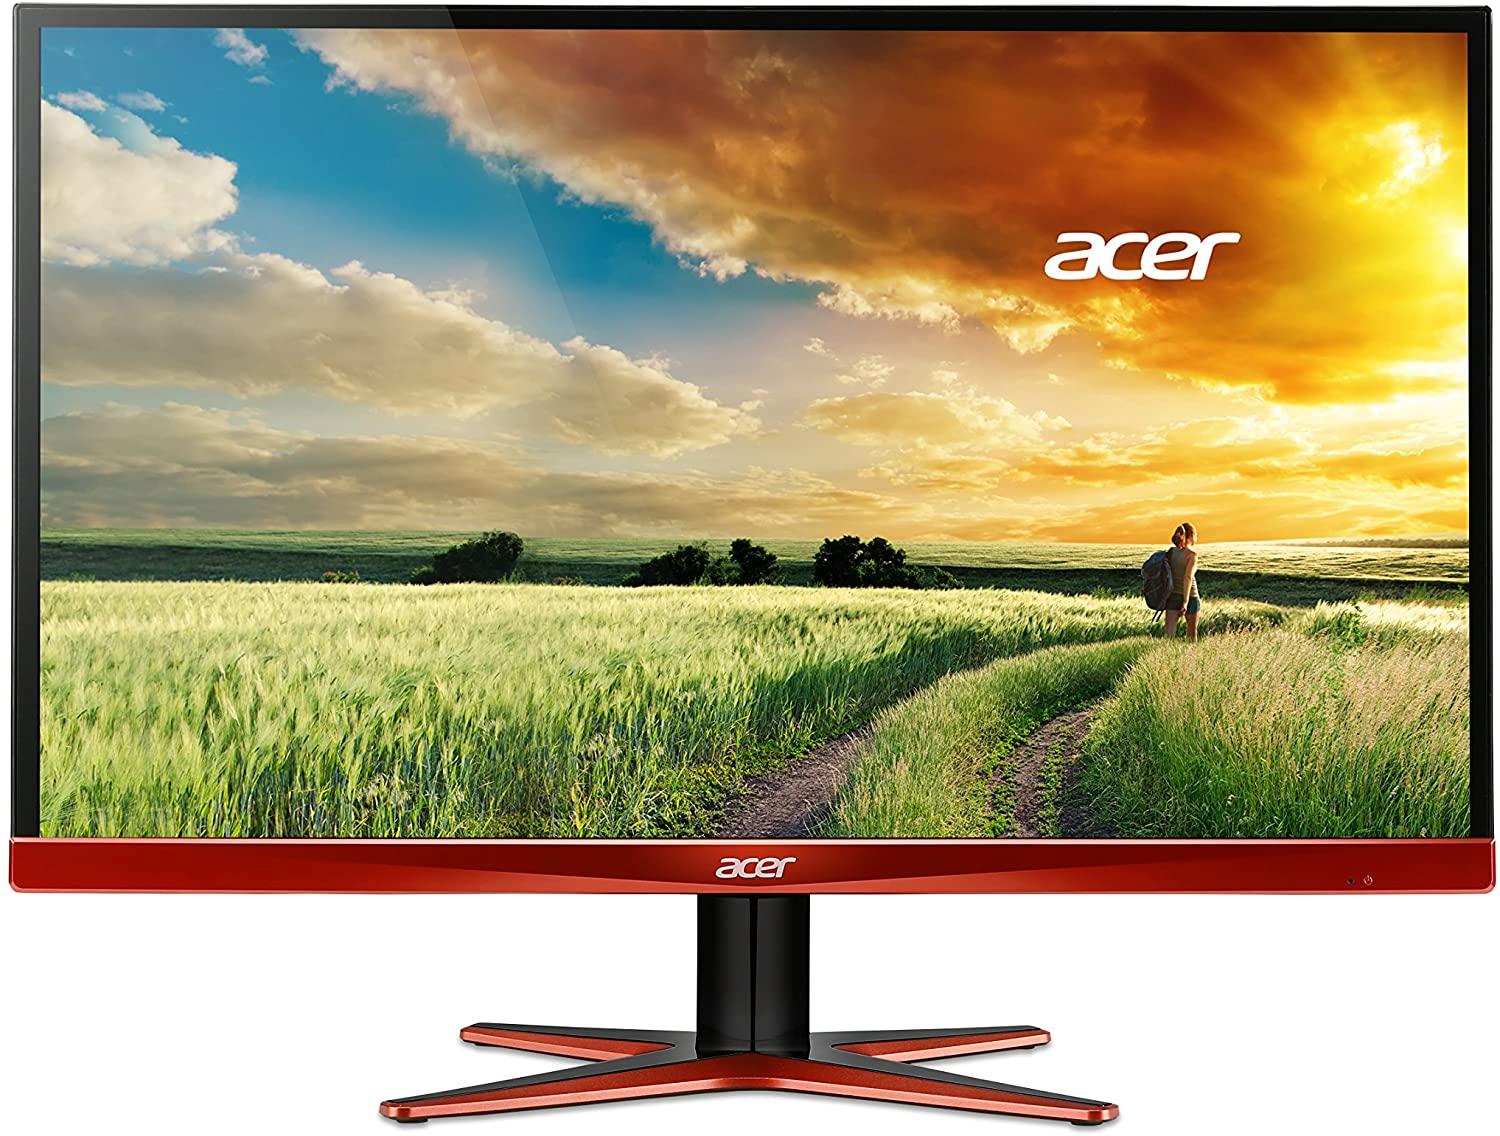 27in Acer XG270HU WQHD AMD Widescreen Monitor for $229.99 Shipped